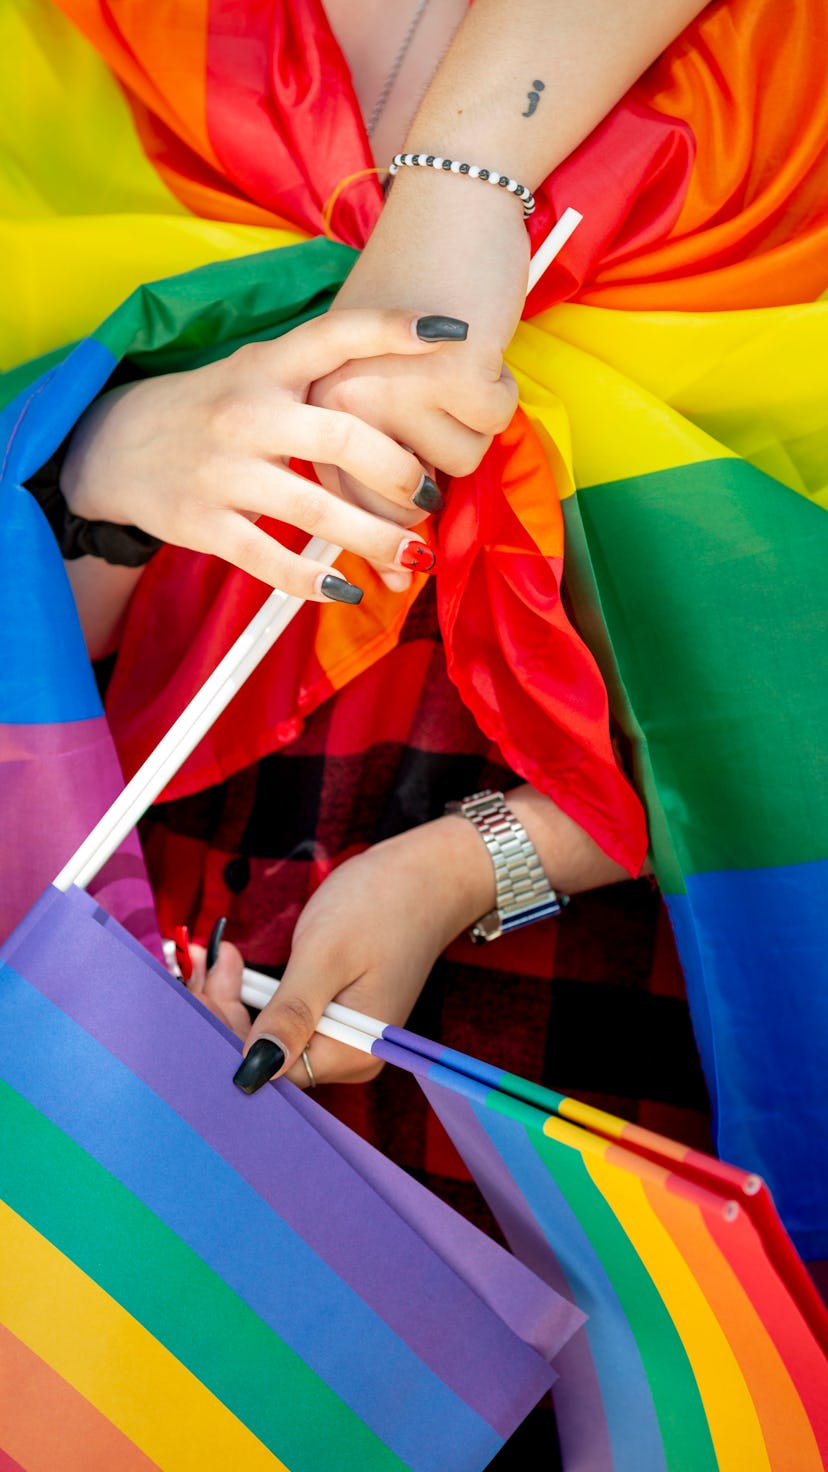 AVENIDA DOS ALIADOS, PORTO, PORTUGAL - 2021/07/03: Participant holds LGBT flags during the parade.
H...